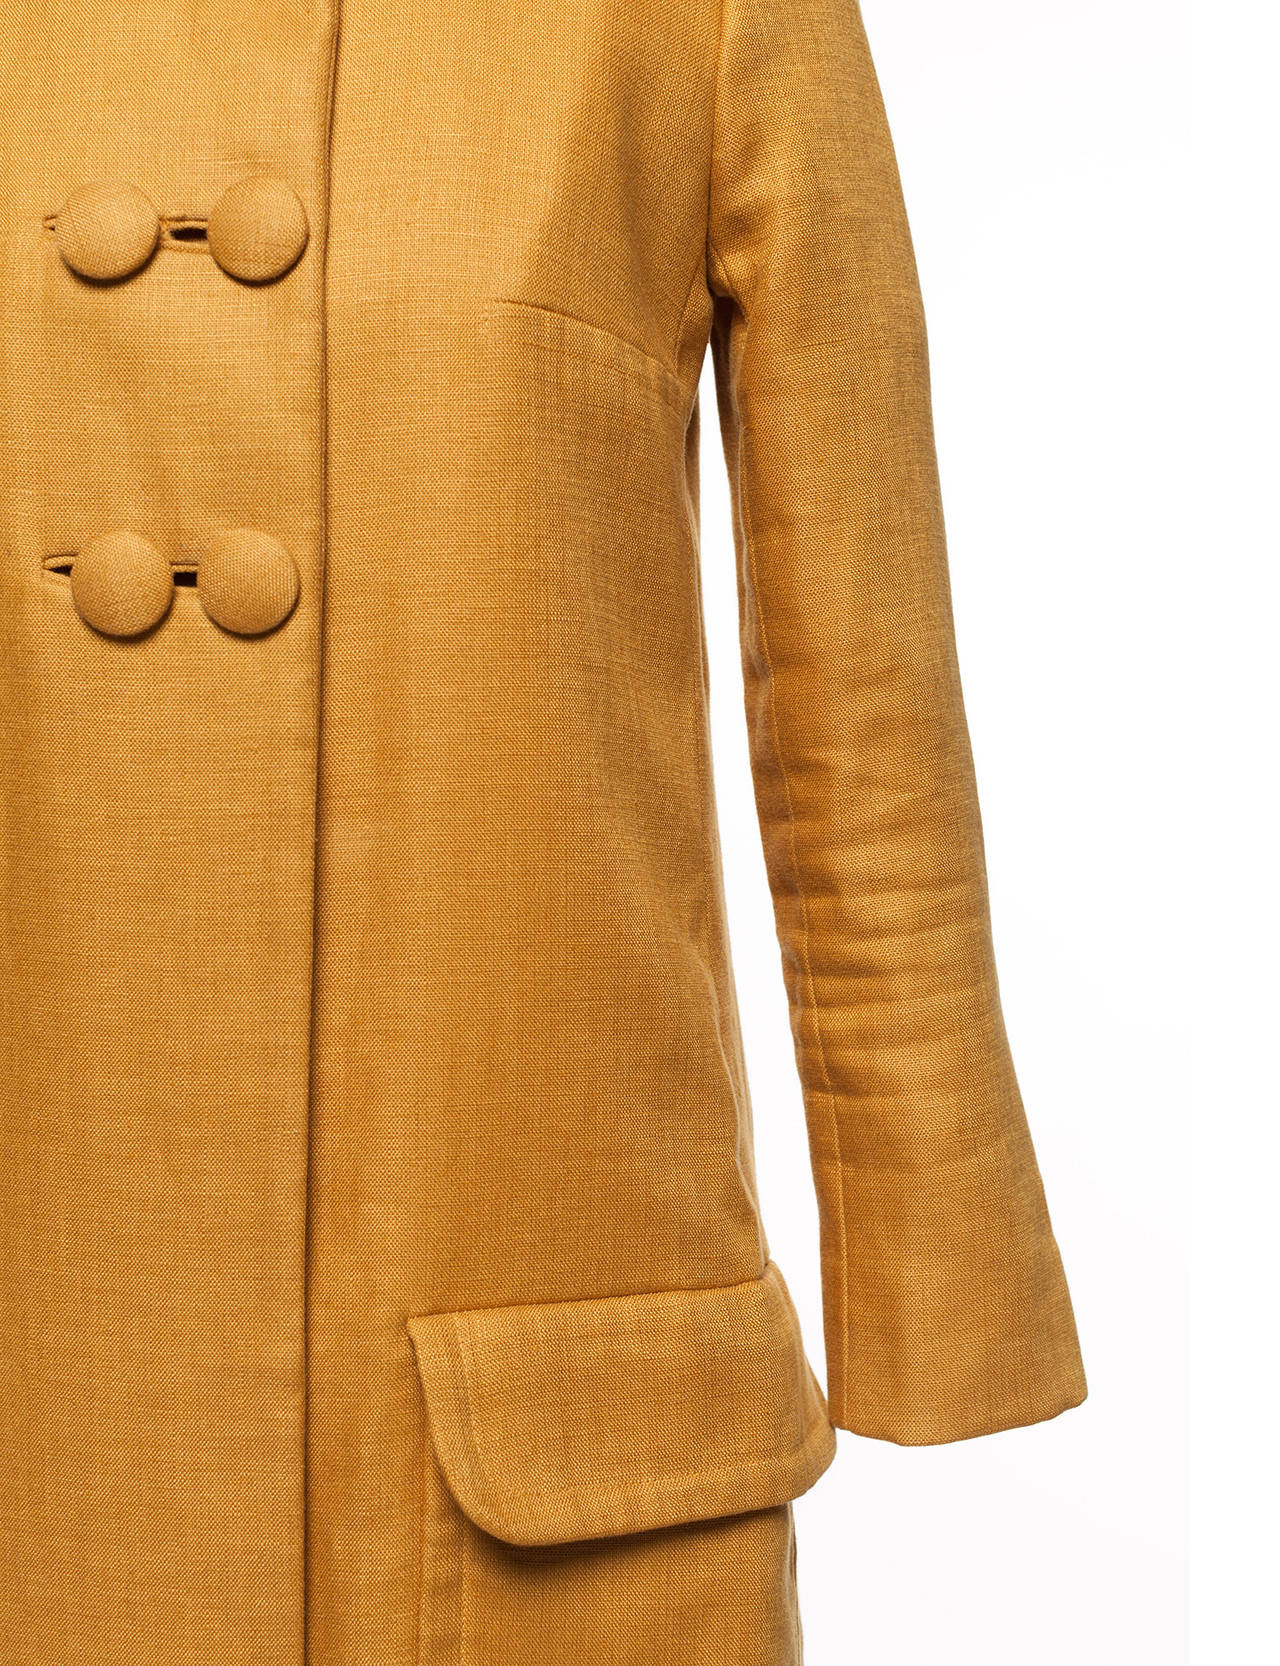 Women's Chloe by Phoebe Philo Mustard linen 60's style coat, Sz. S